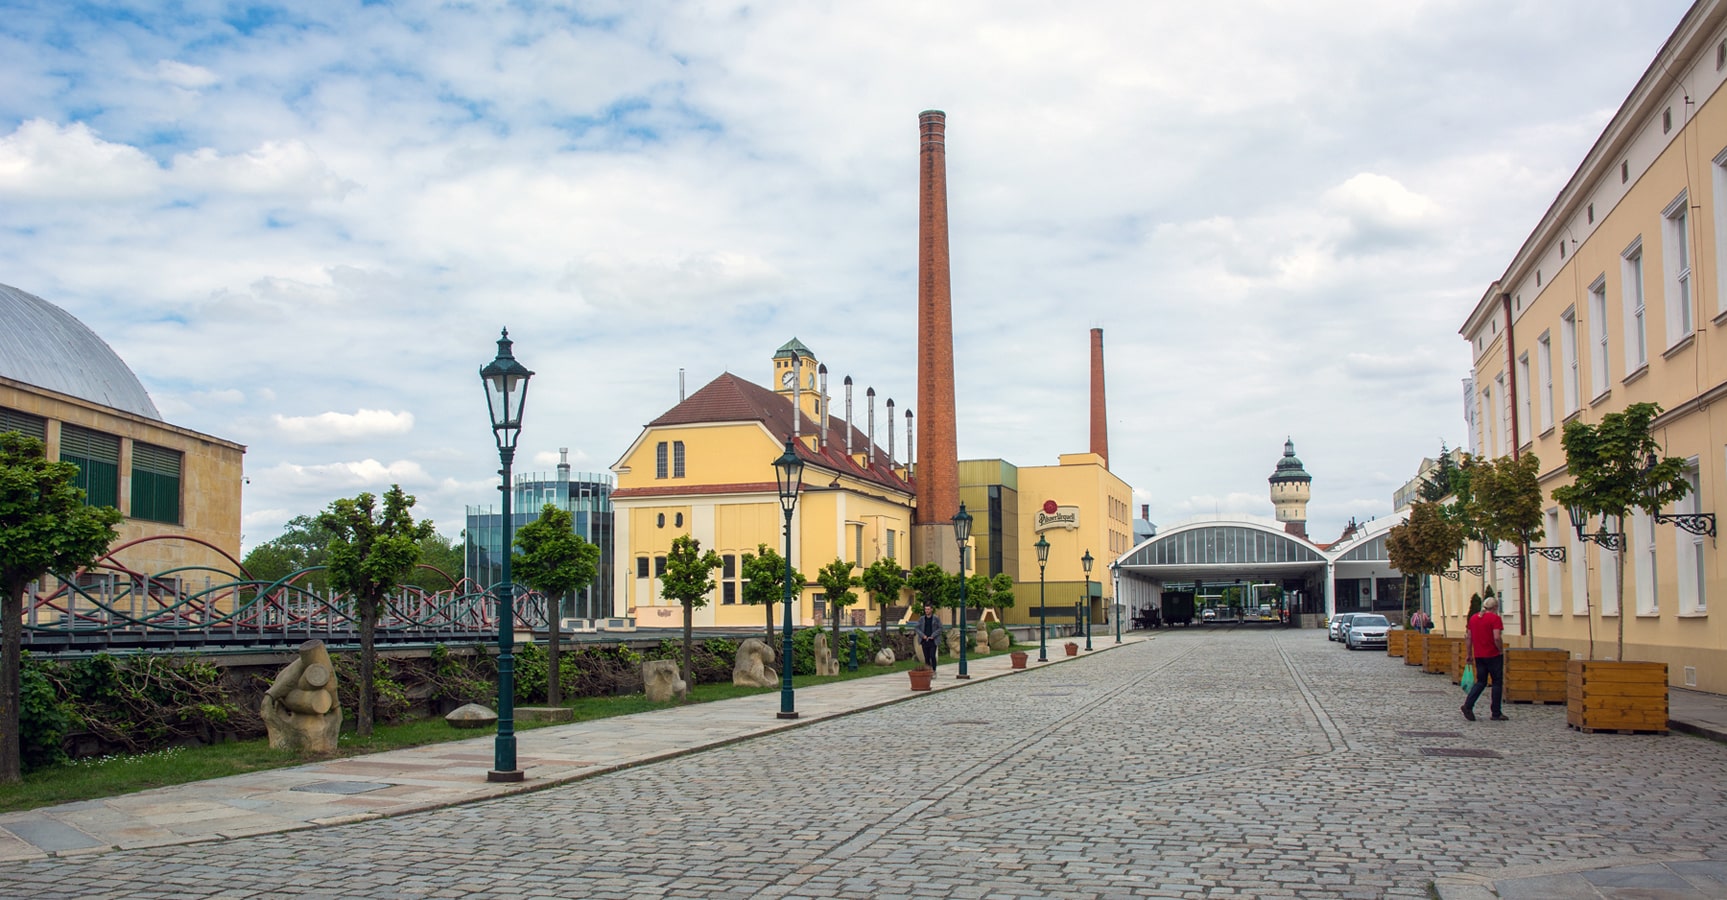 Plzeňské pivo - celkový pohled do areálu Plzeňského Prazdroje